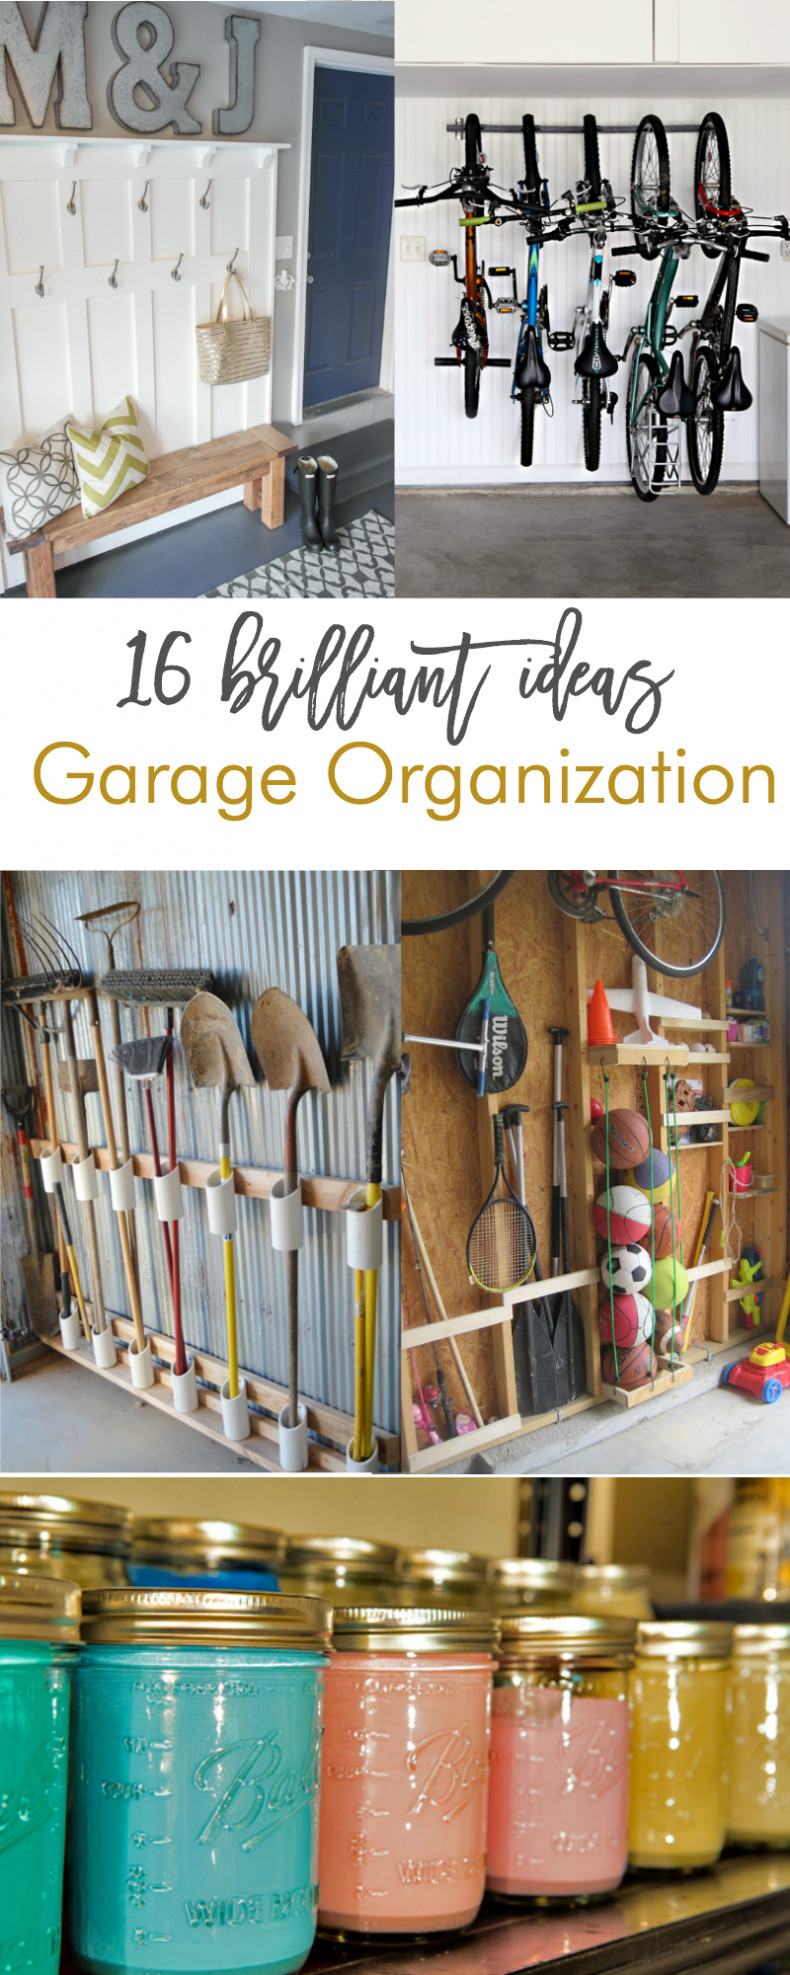 DIY Organizing Ideas
 16 Brilliant DIY Garage Organization Ideas